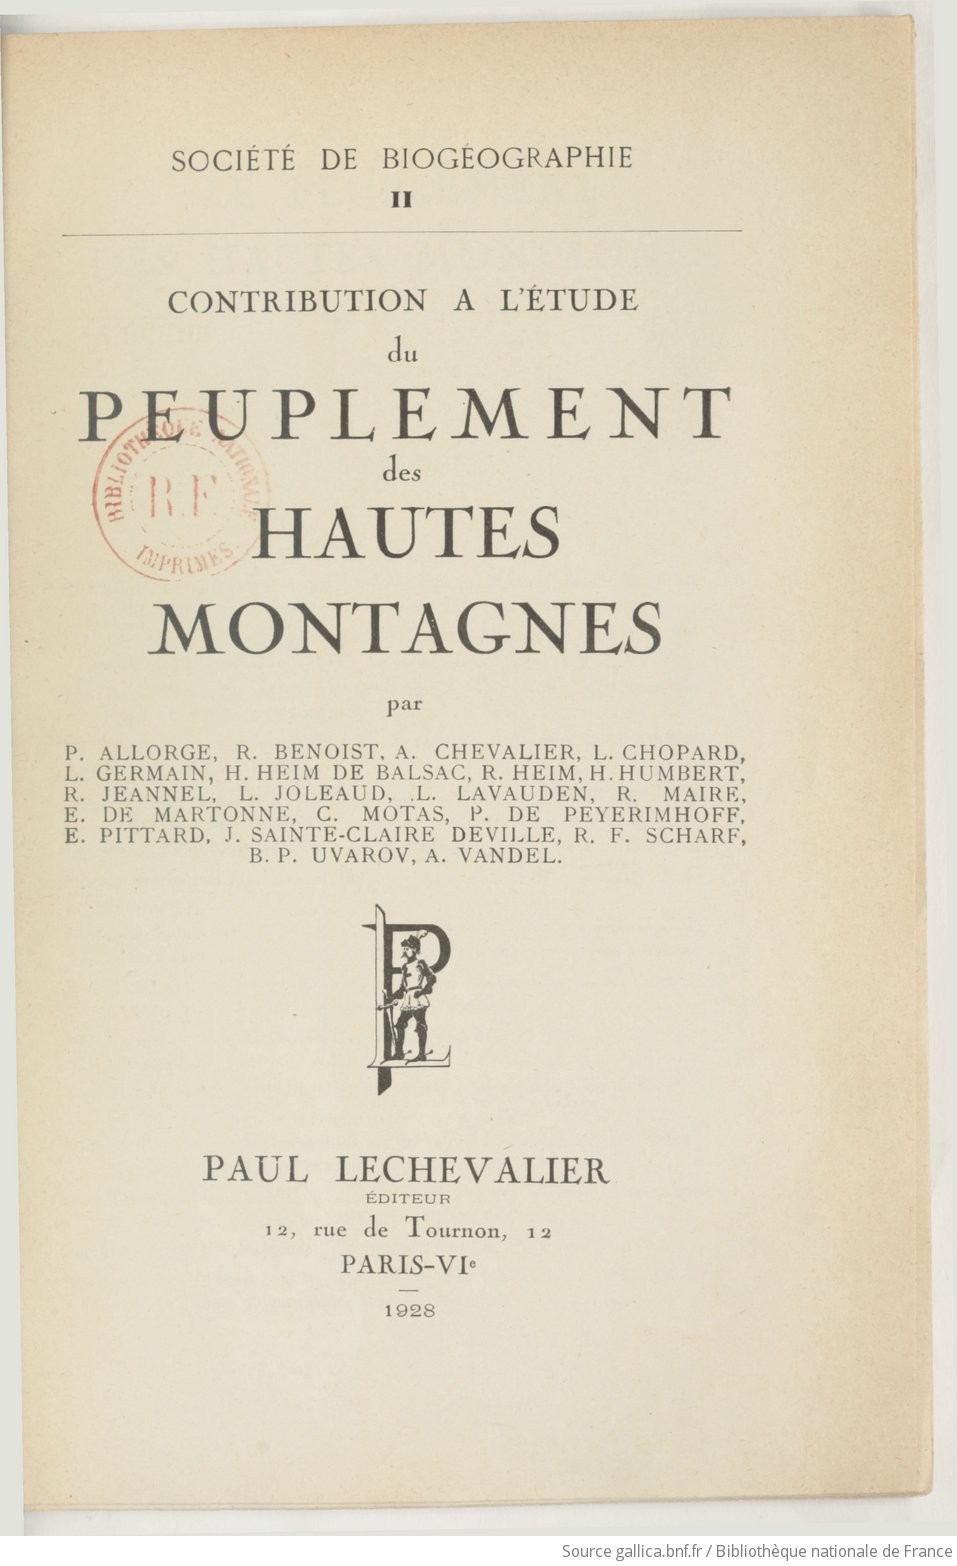 Contribution à l'étude du peuplement des hautes montagnes / par P. Allorge, R. Benoist,... A. Chevalier... [et al.]